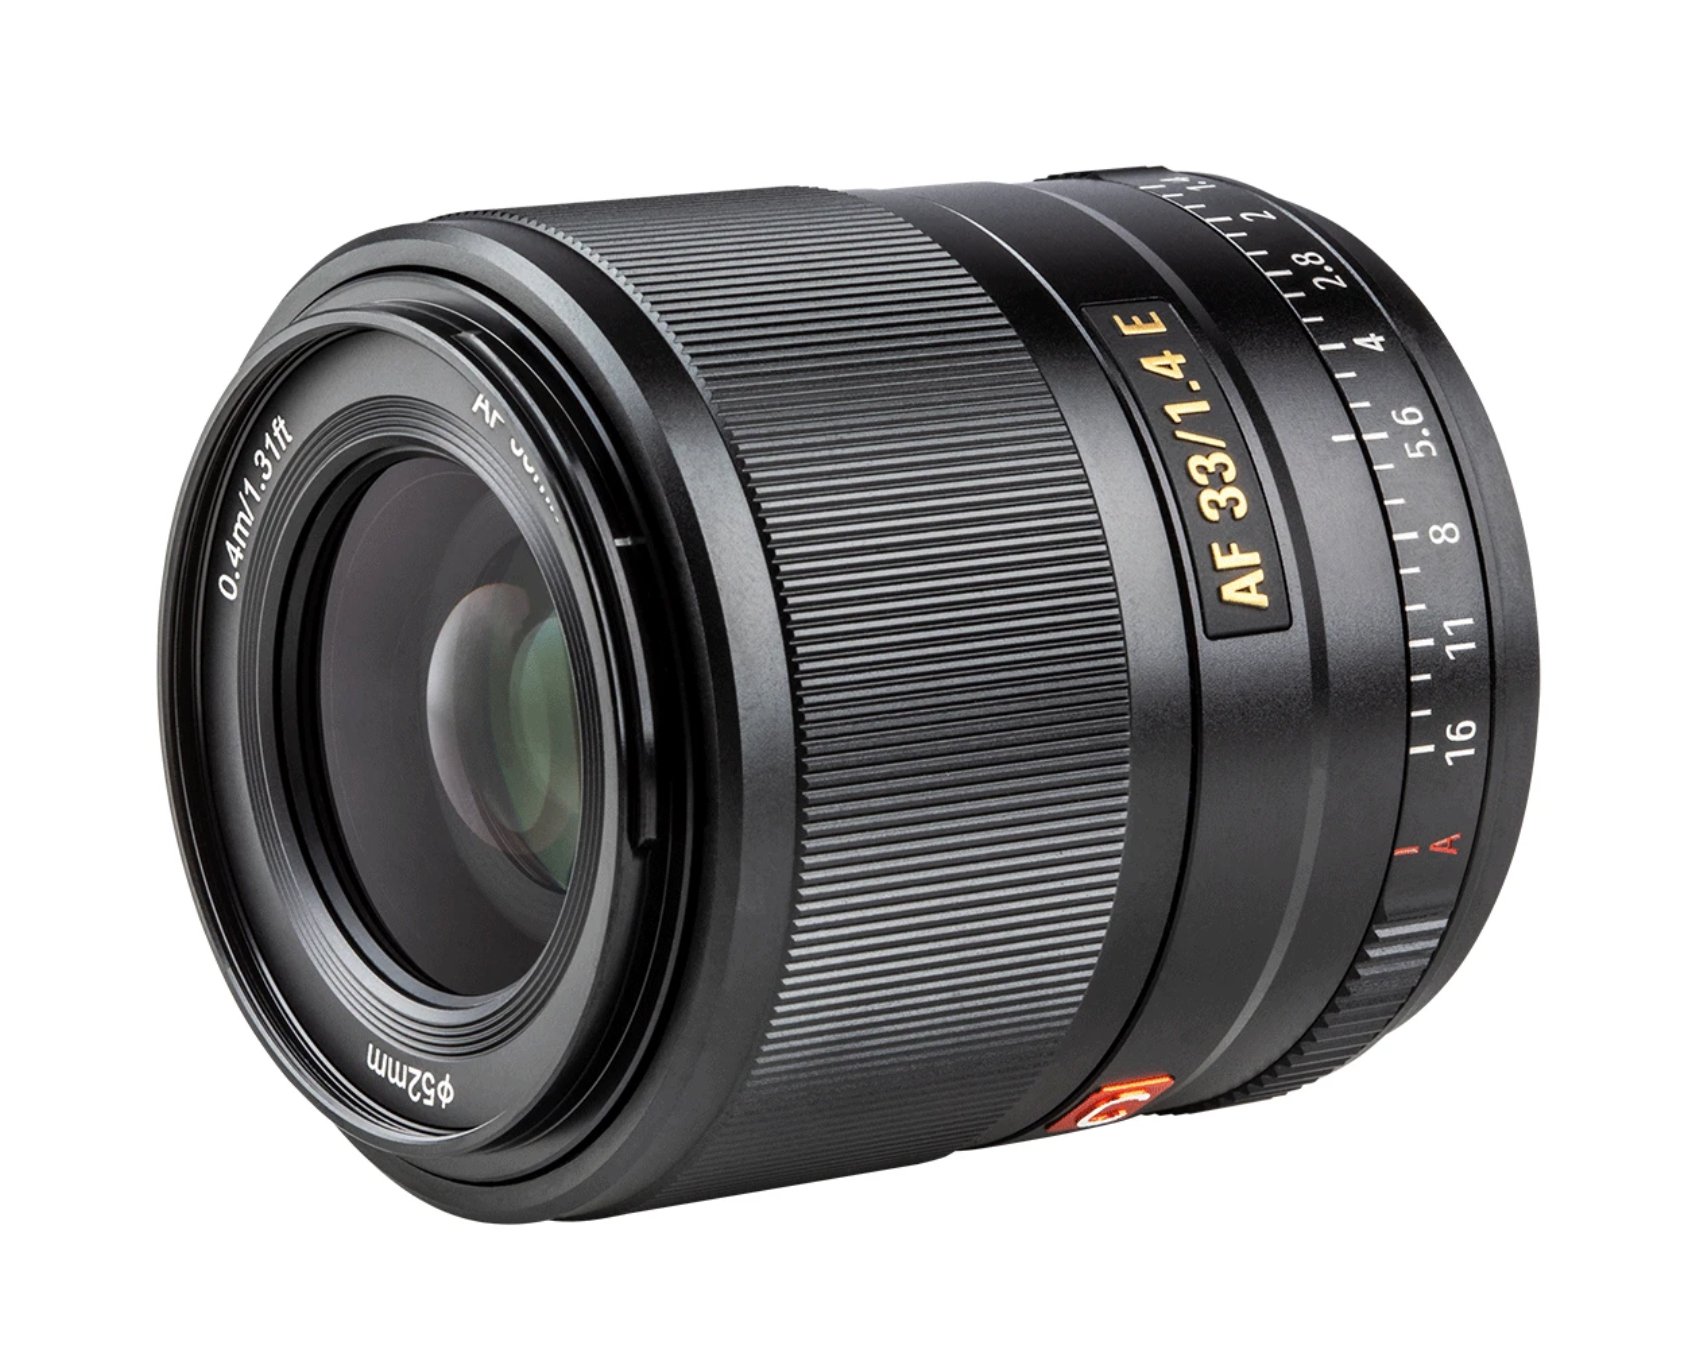 Viltrox ra mắt ống kính 33mm F1.4, 56mm F1.4 cho Sony APS-C